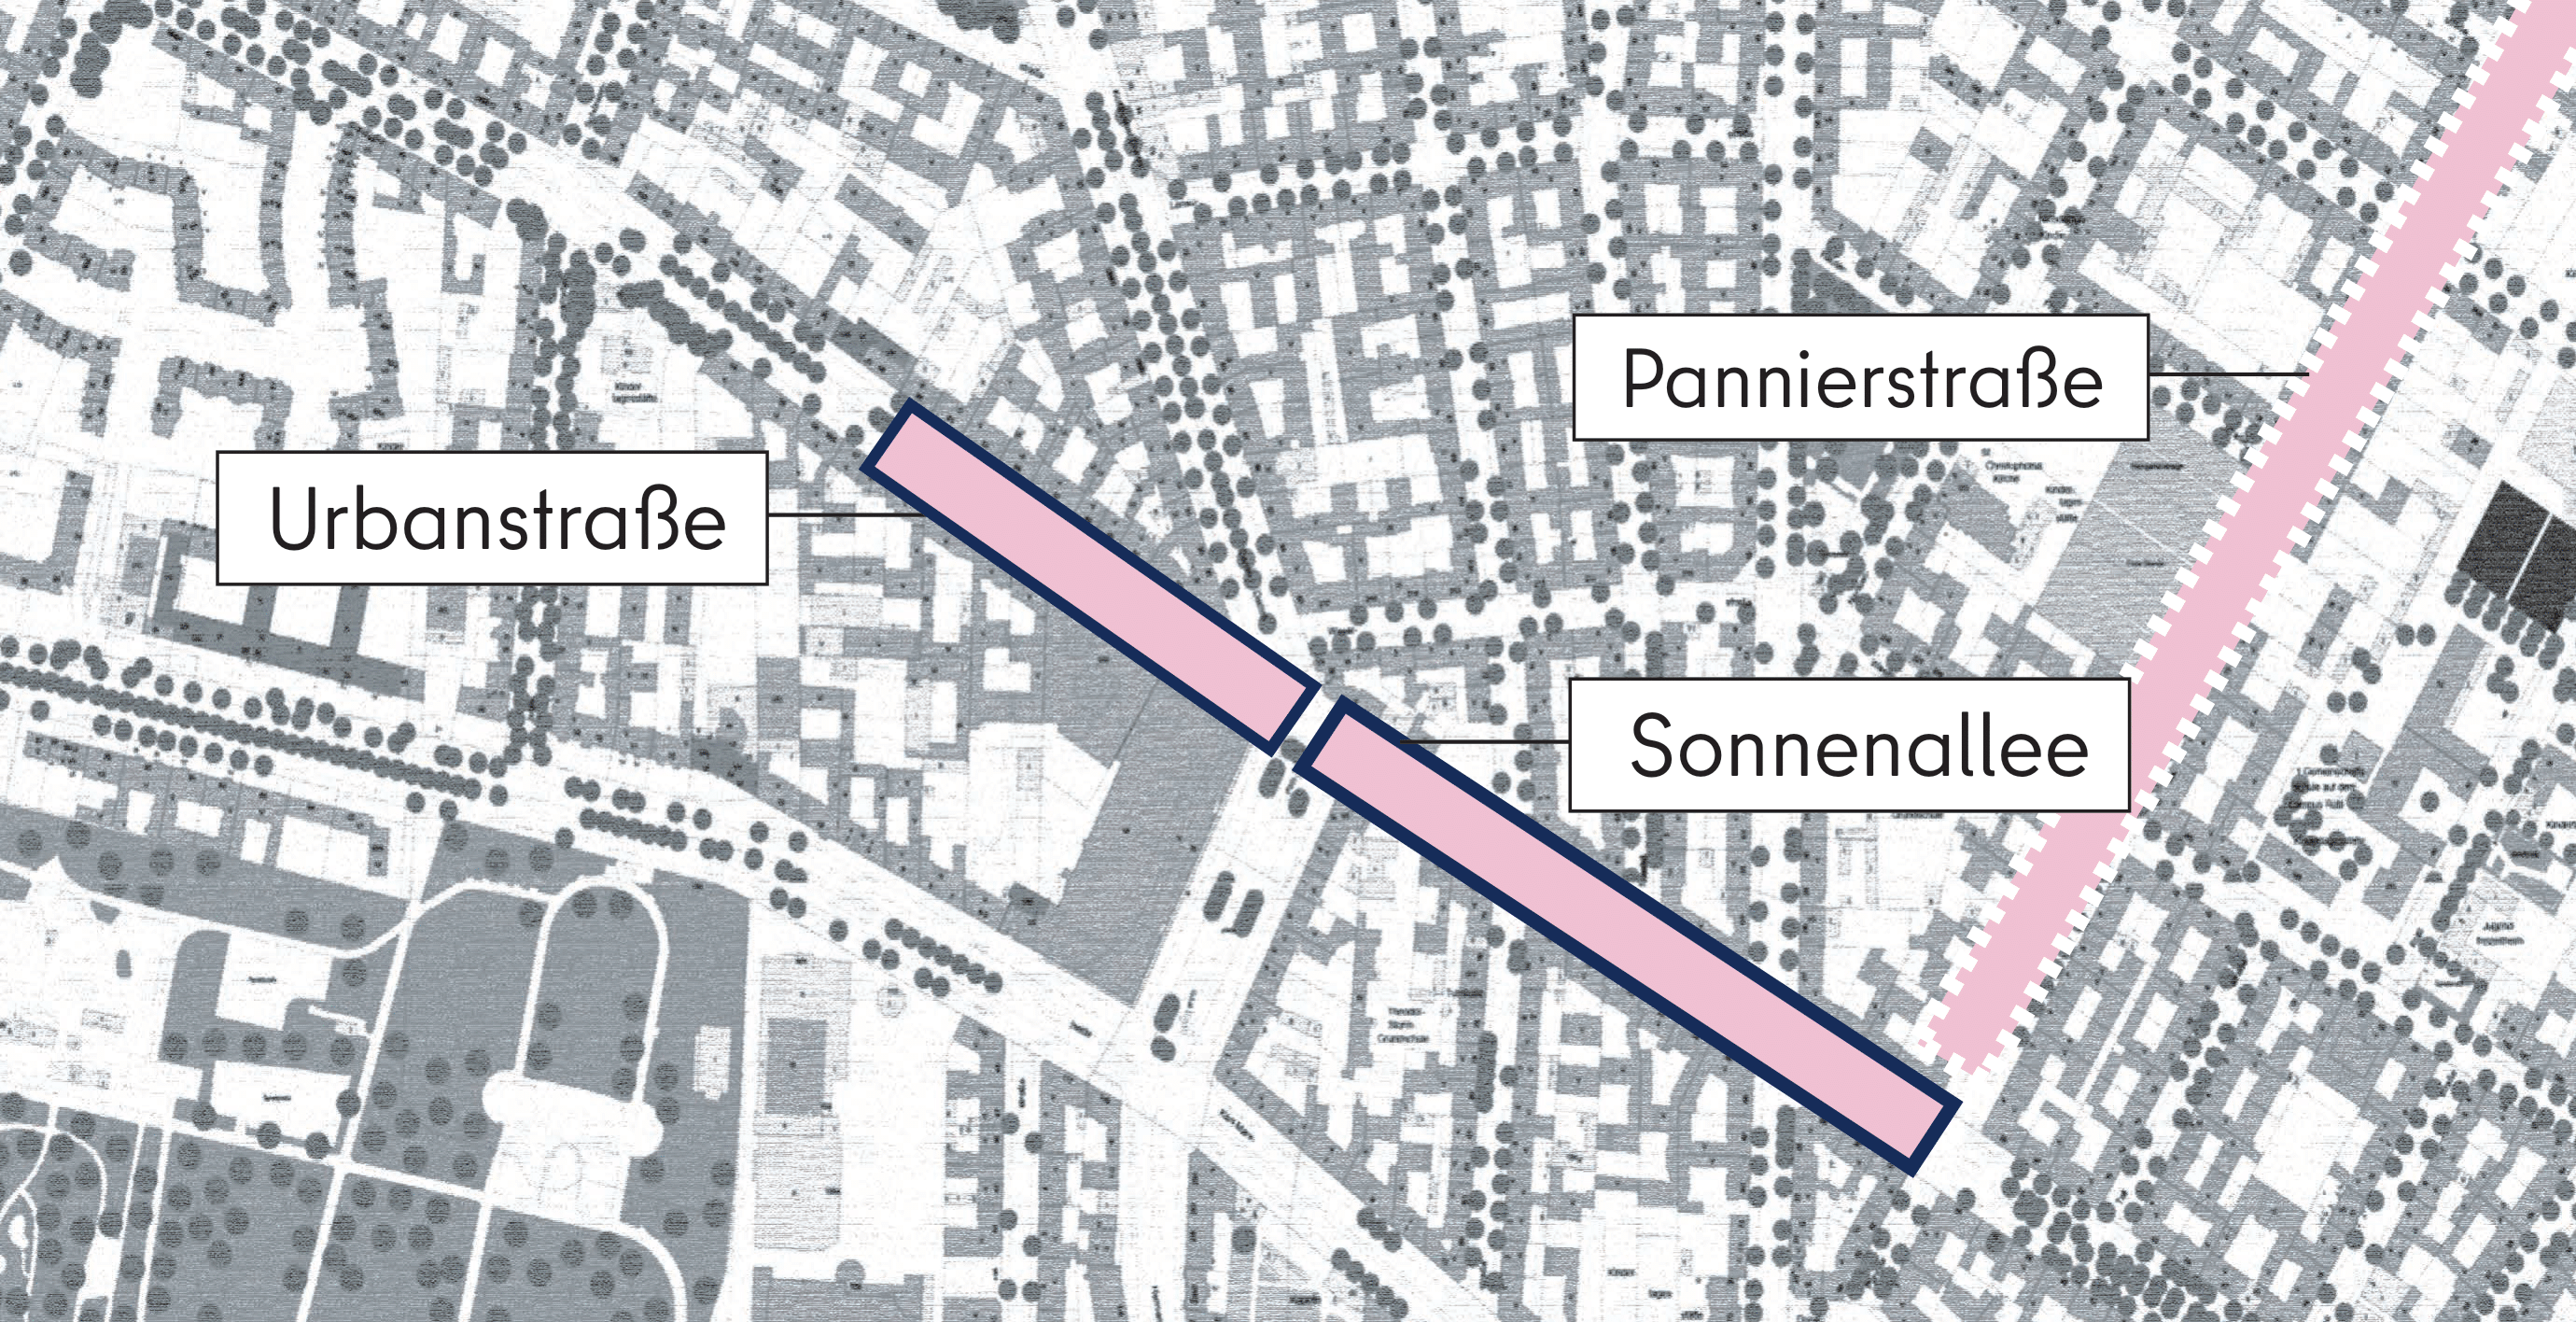 Dieses Bild zeigt eine grafische Darstellung des Abschnitts Sonnenallee und Urbanstraße aus der Vogelperspektive